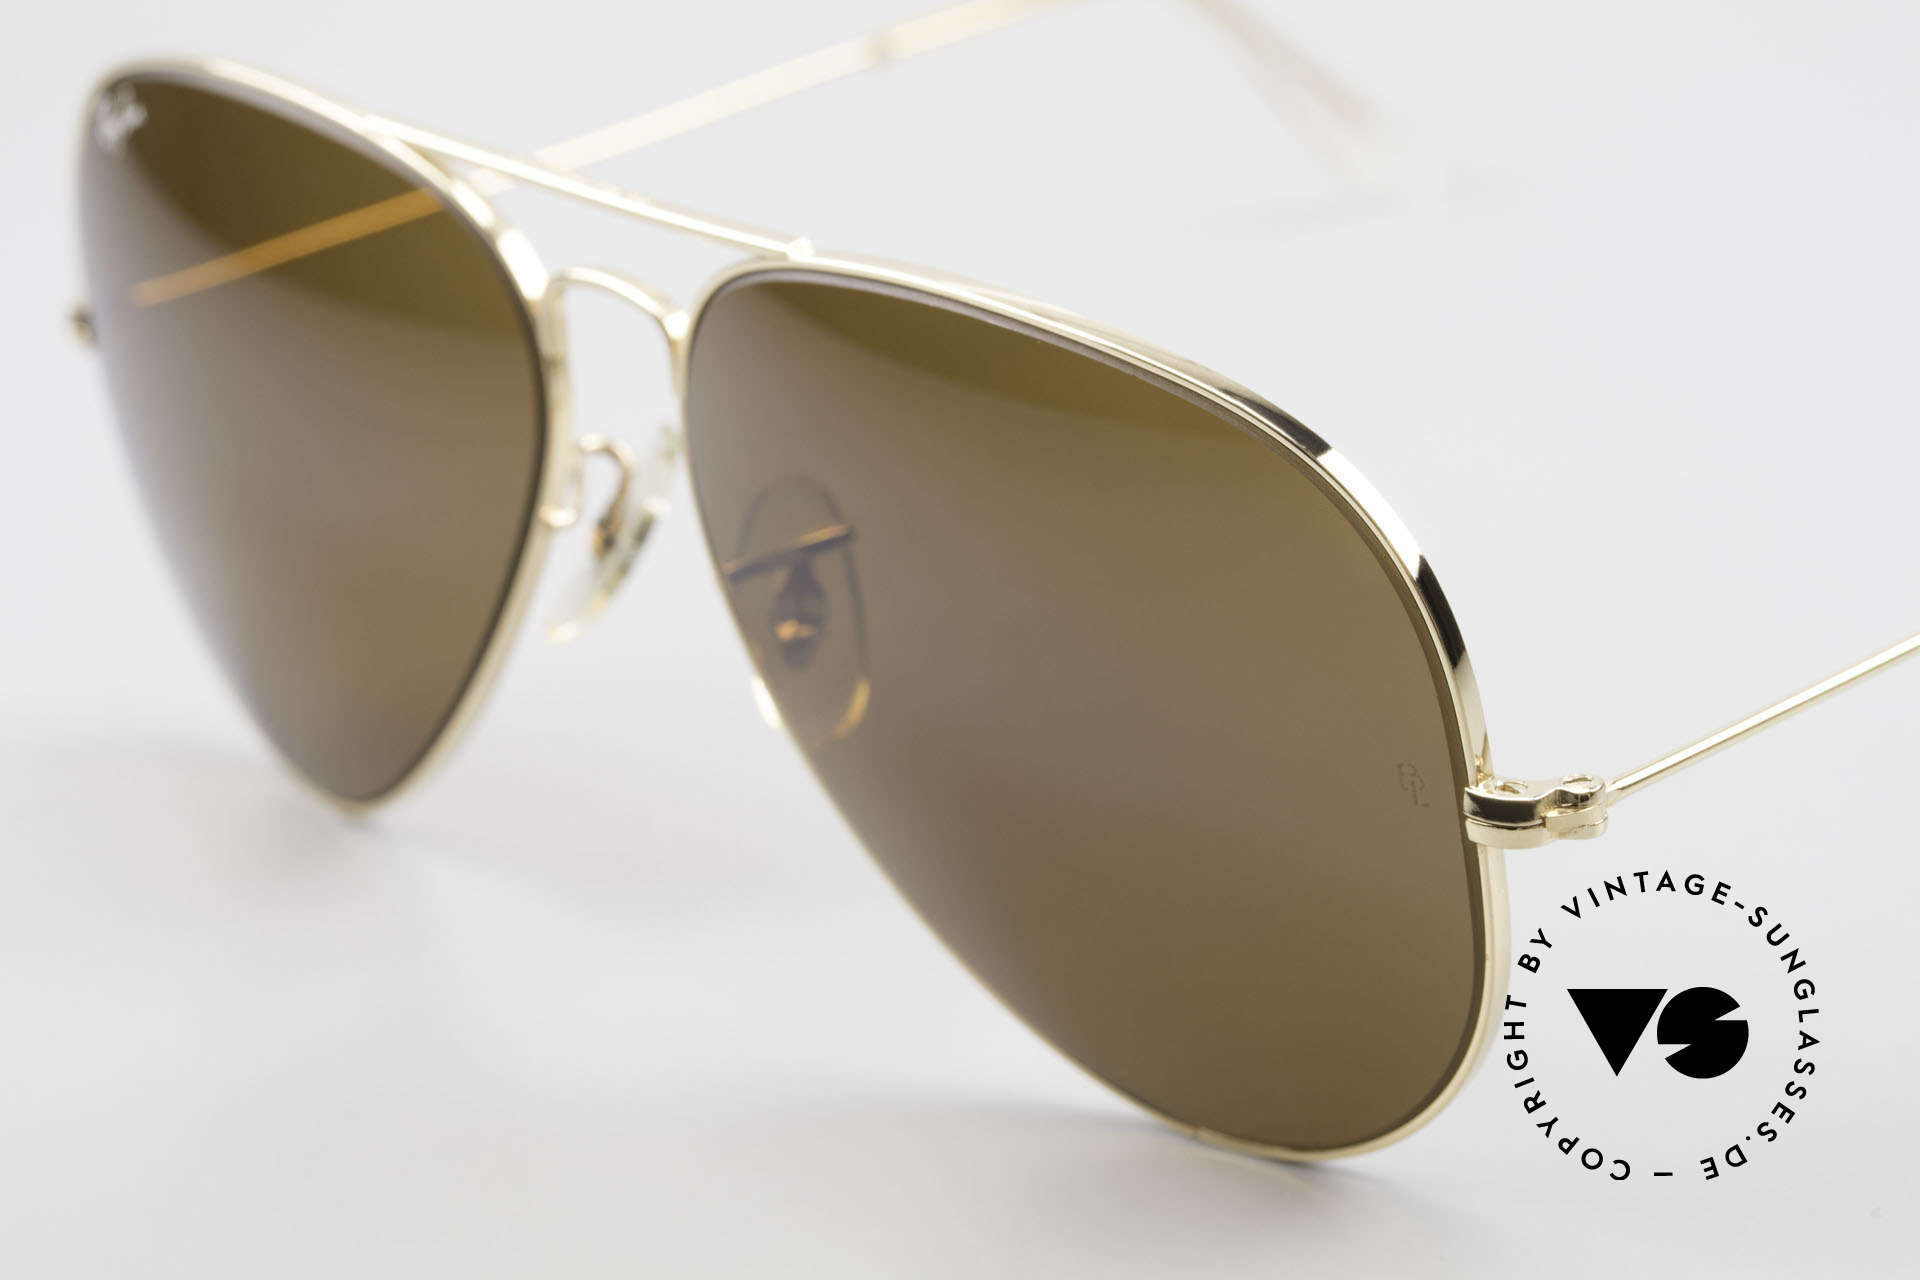 Sunglasses Ray Ban Large Metal II Old Ray-Ban B&L USA Shades